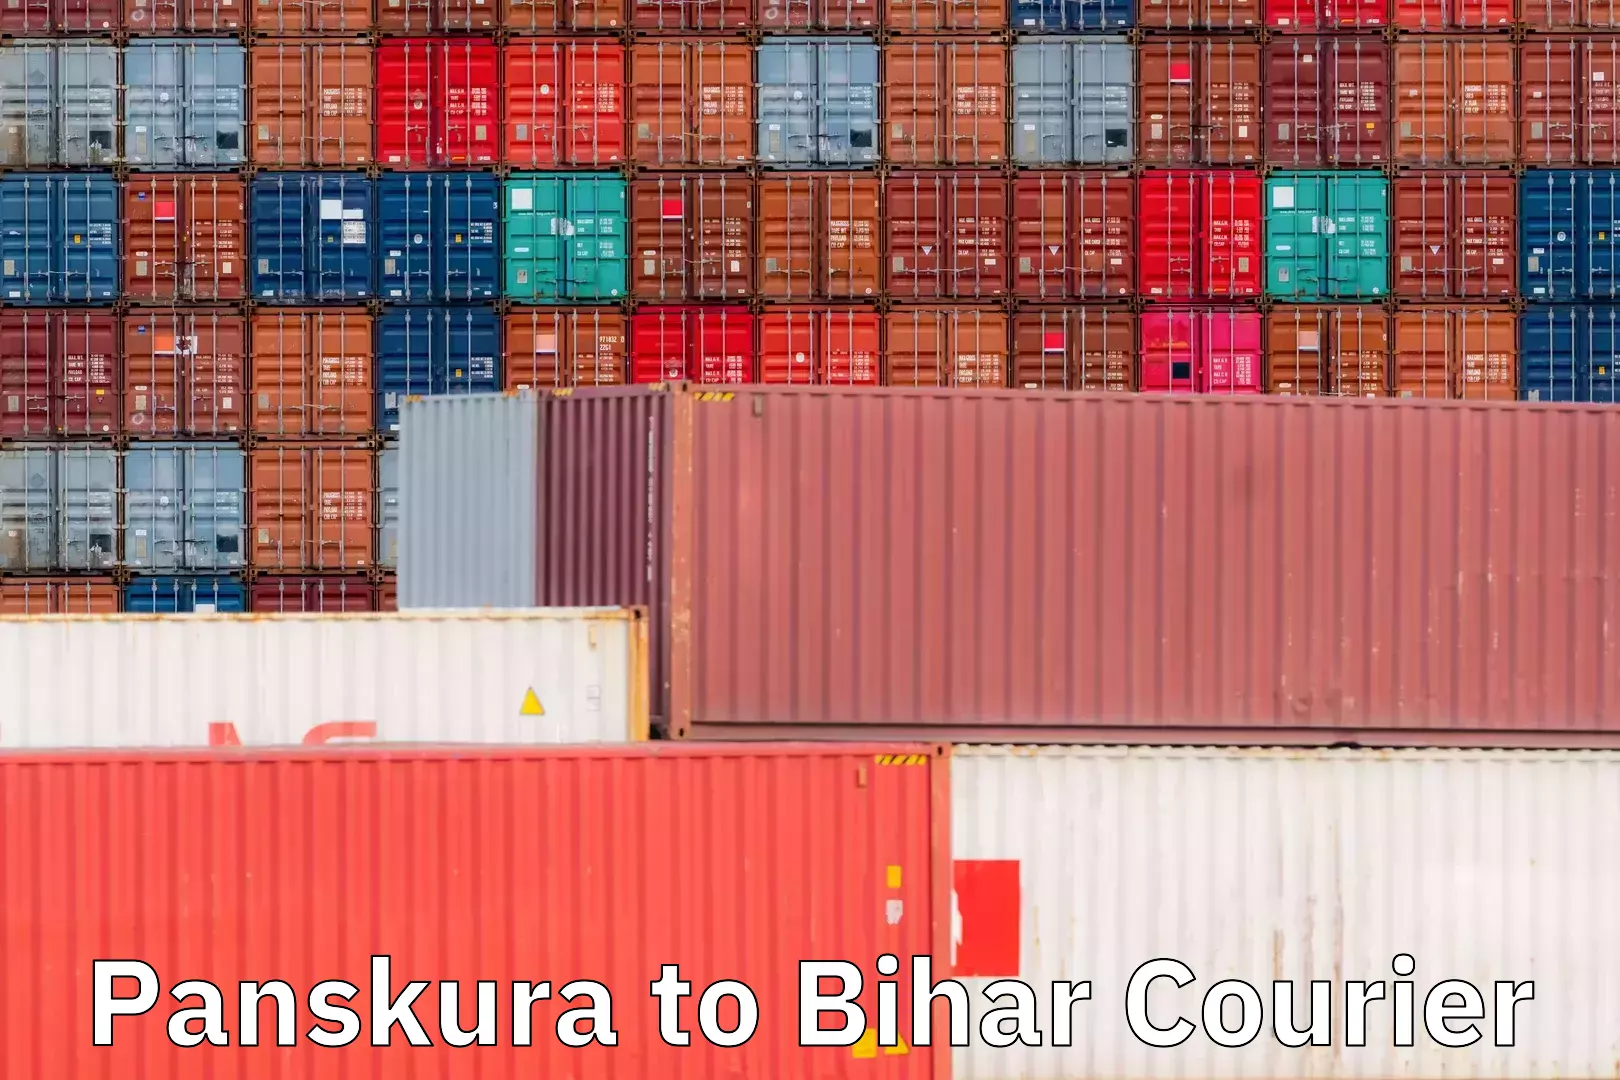 Efficient parcel service Panskura to Bihar